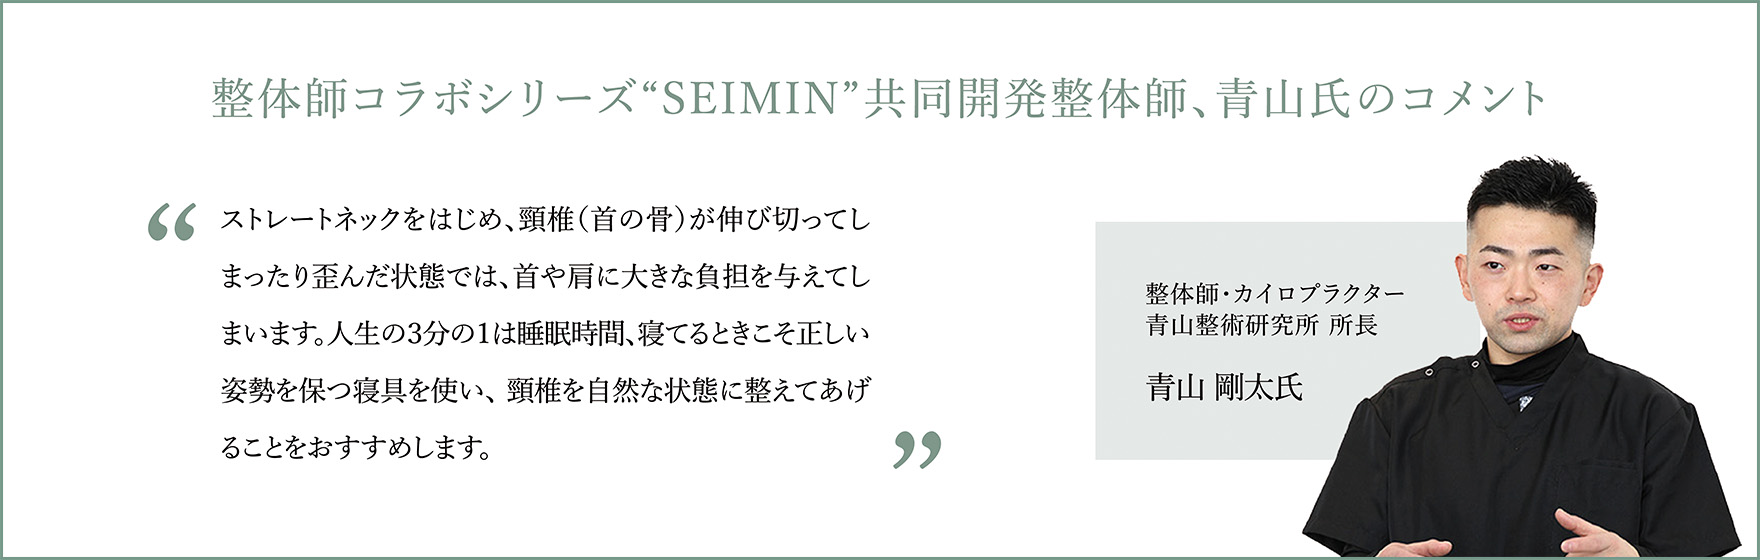 整体師コラボシリーズ“SEIMIN”監修整体師、青山氏のコメント